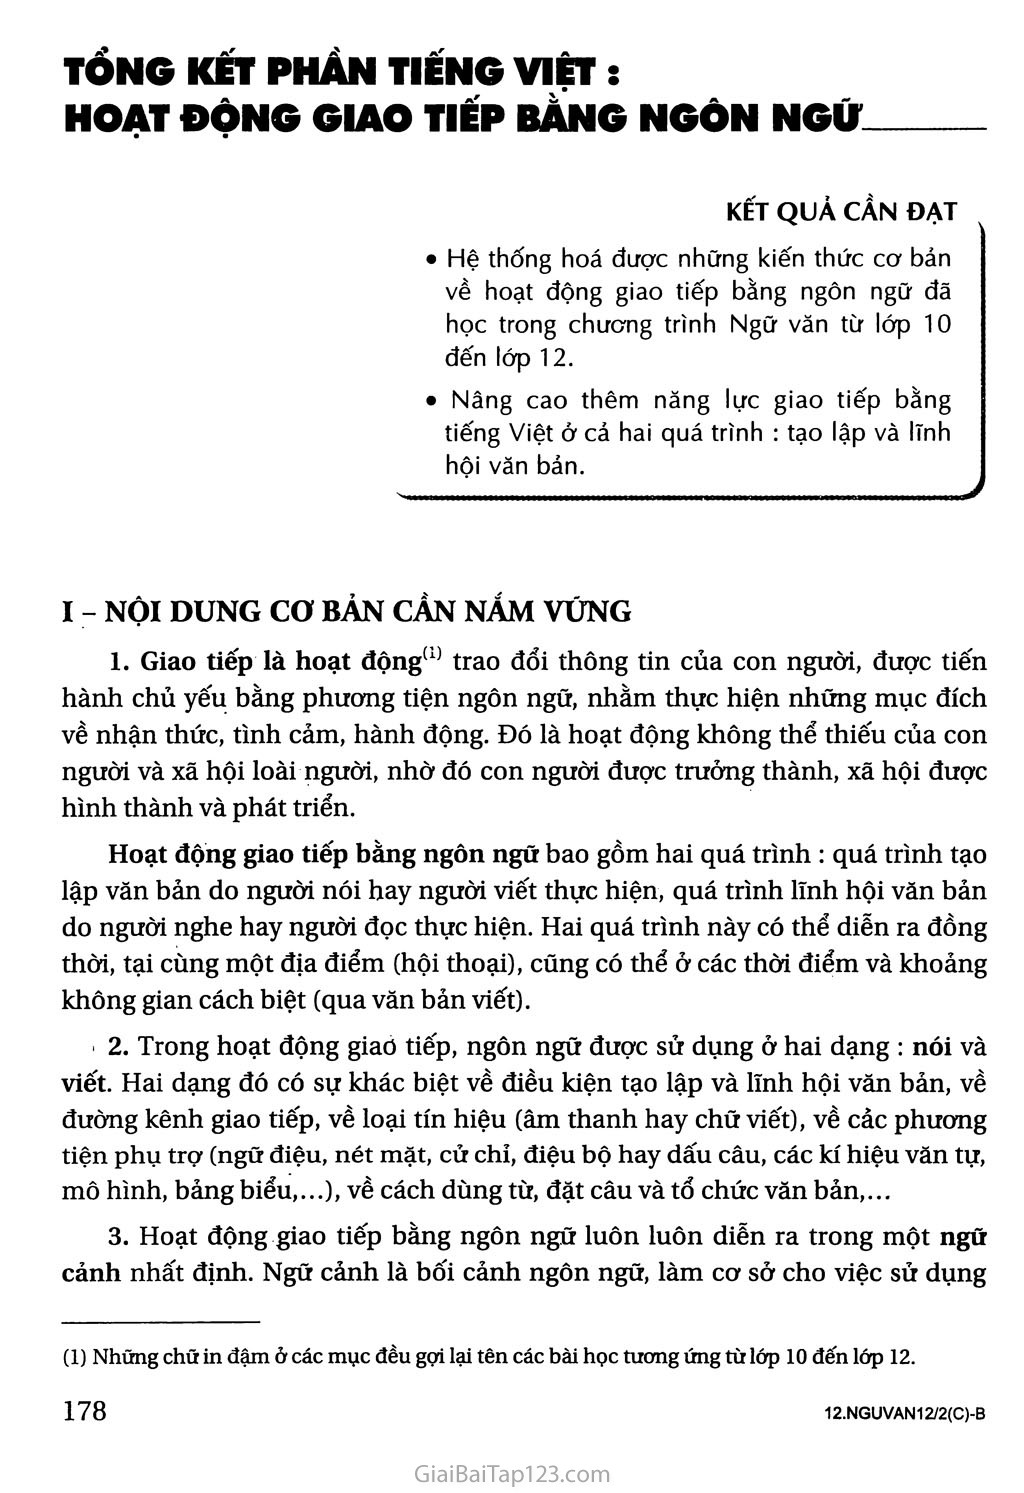 Tổng kết phần Tiếng Việt: hoạt động giao tiếp bằng ngôn ngữ trang 1